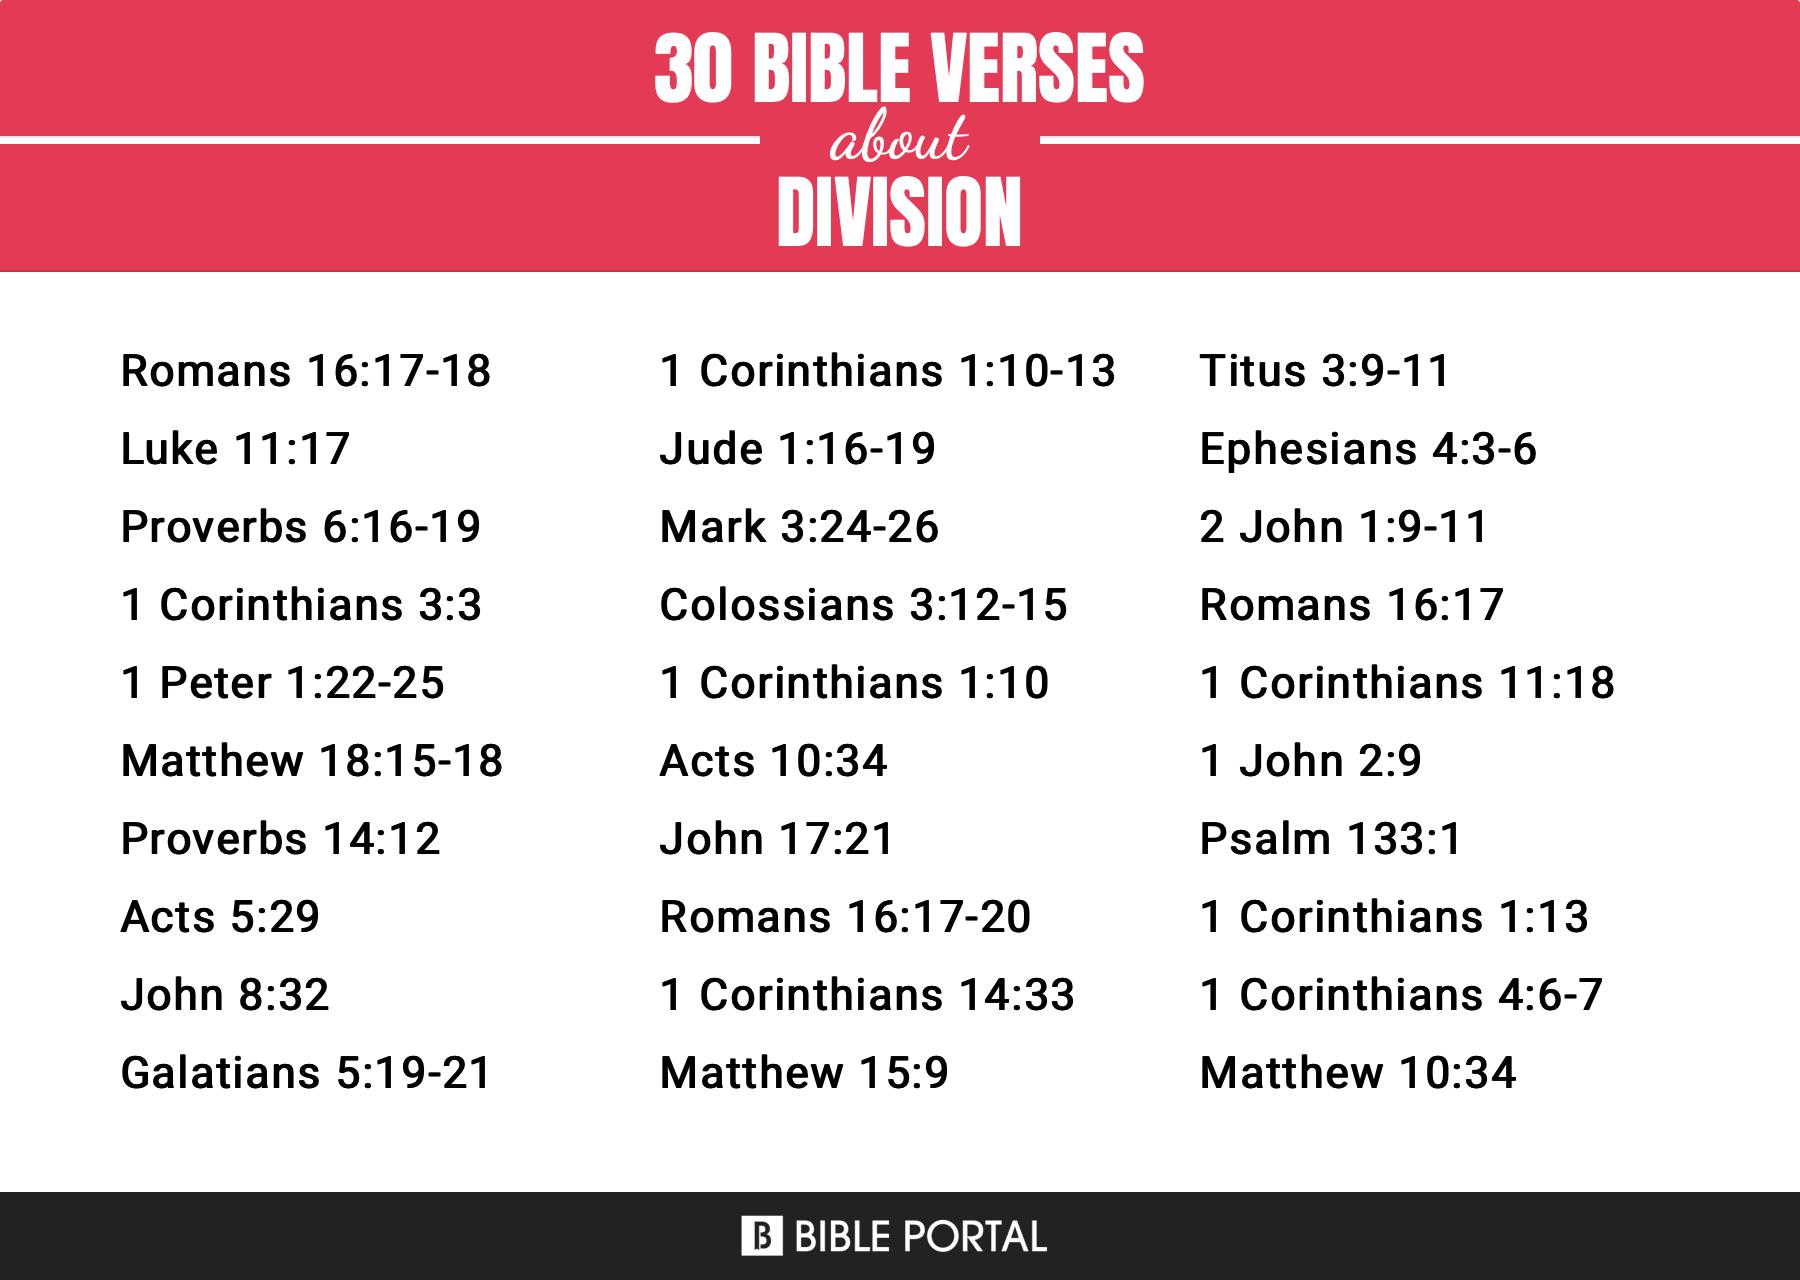 [Top] Más de 27 versículos de la Biblia sobre la división